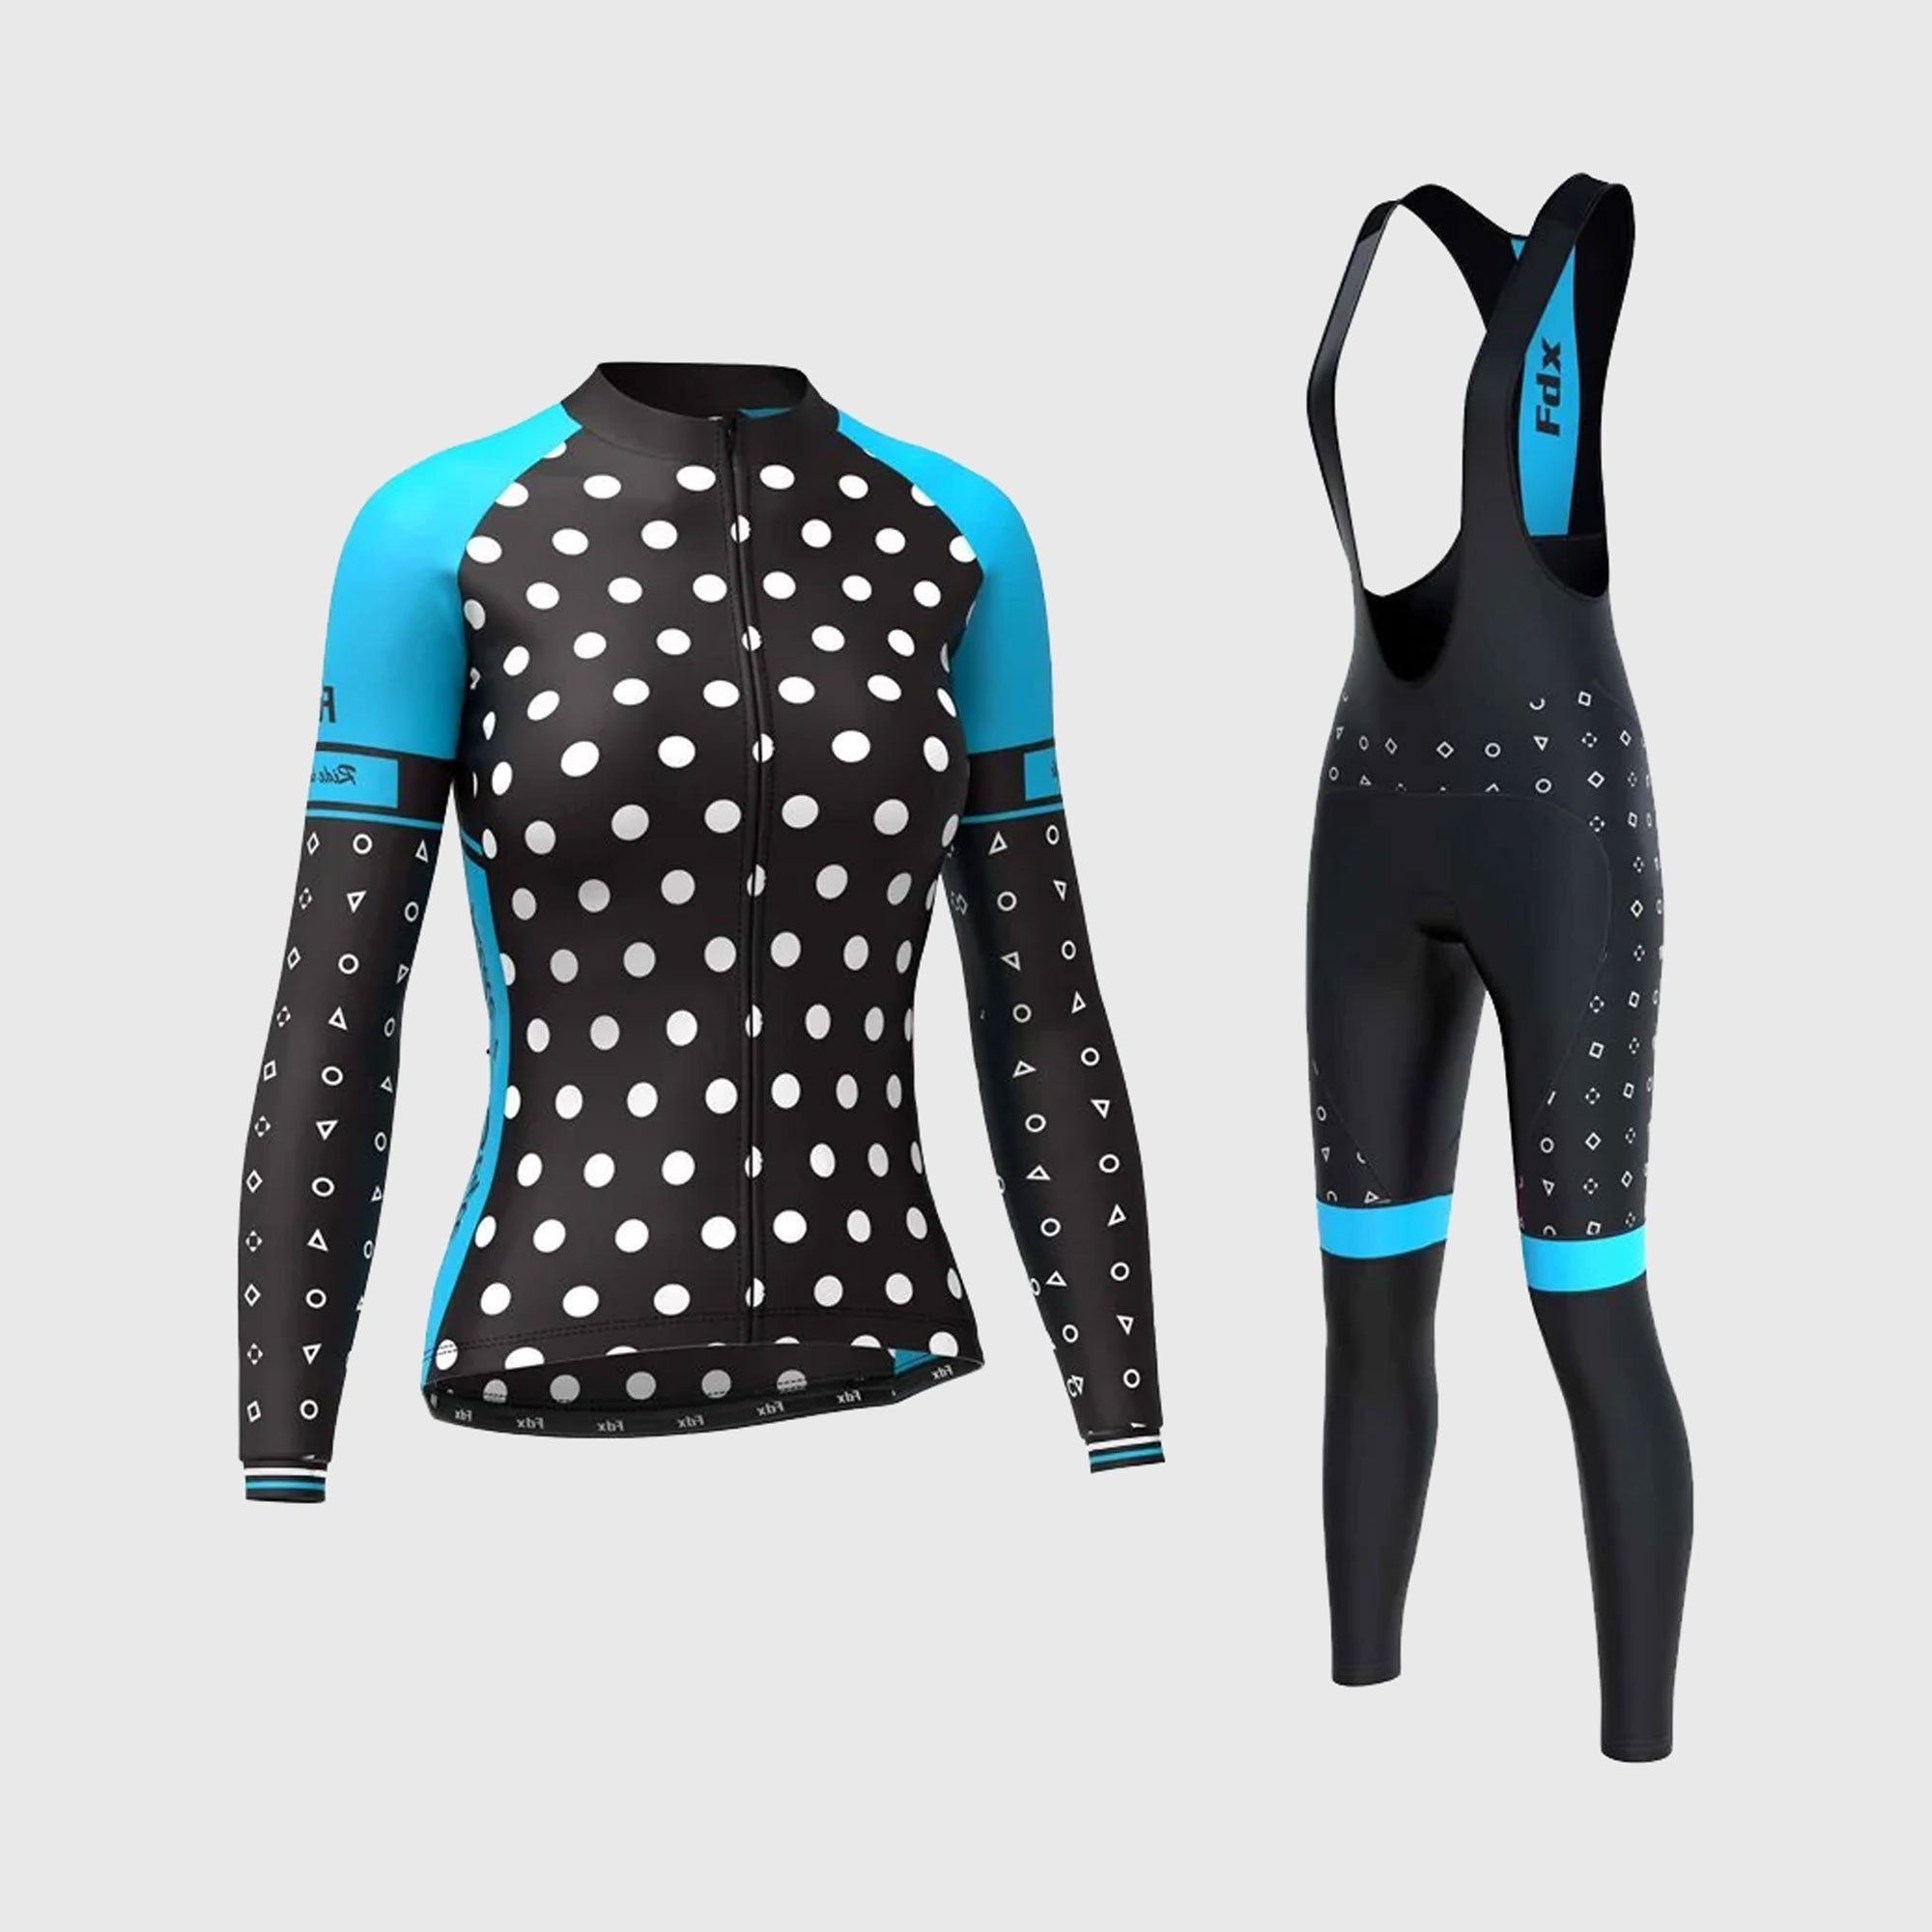 Fdx Women's Black & Sky Blue Long Sleeve Cycling Jersey & Gel Padded Bib Tights Pants for Winter Roubaix Thermal Fleece Road Bike Wear Windproof, Hi-viz Reflectors & Pockets - Polka Dots